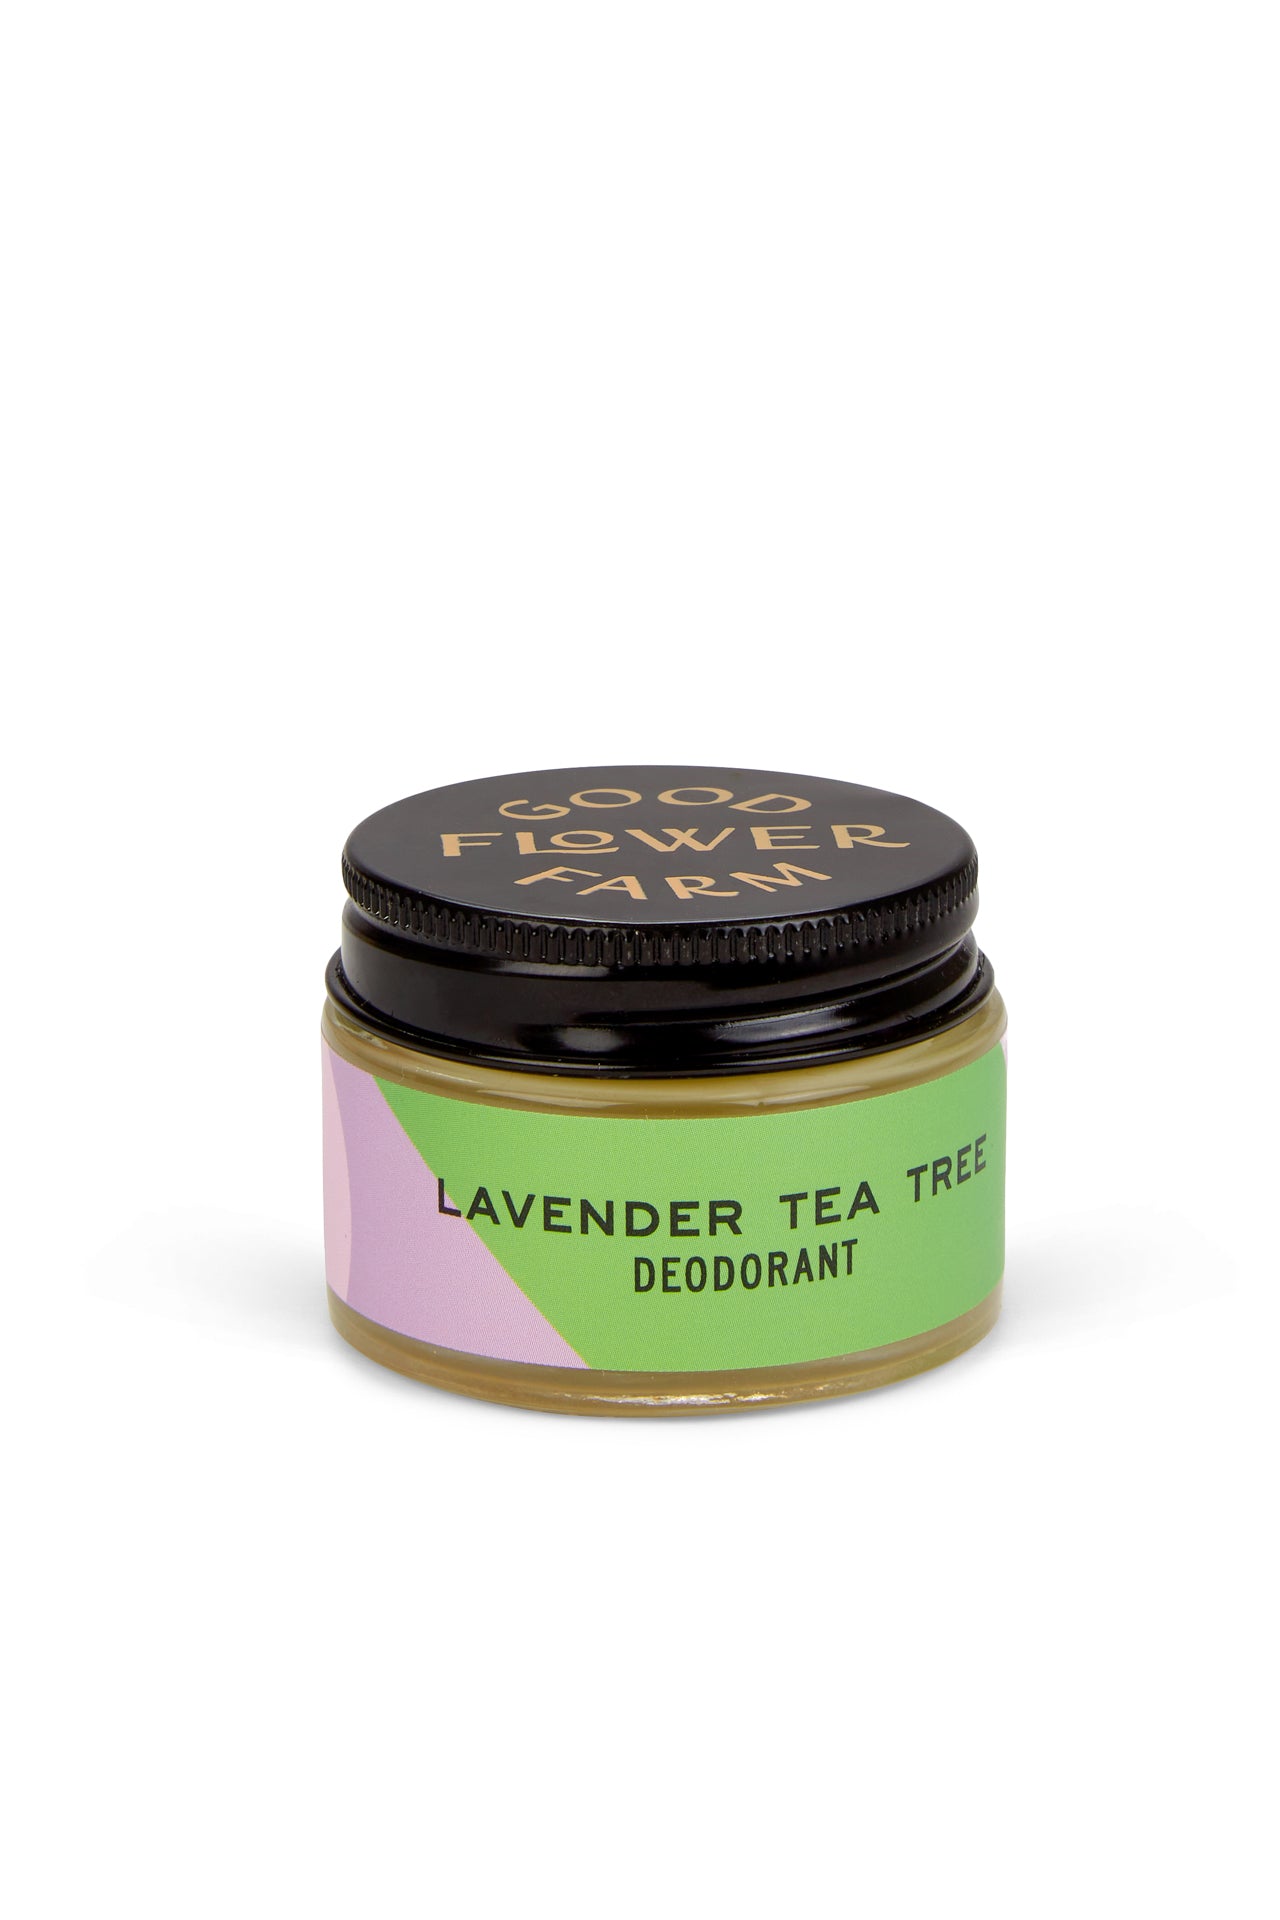 Lavender Tea Tree Deodorant Jar